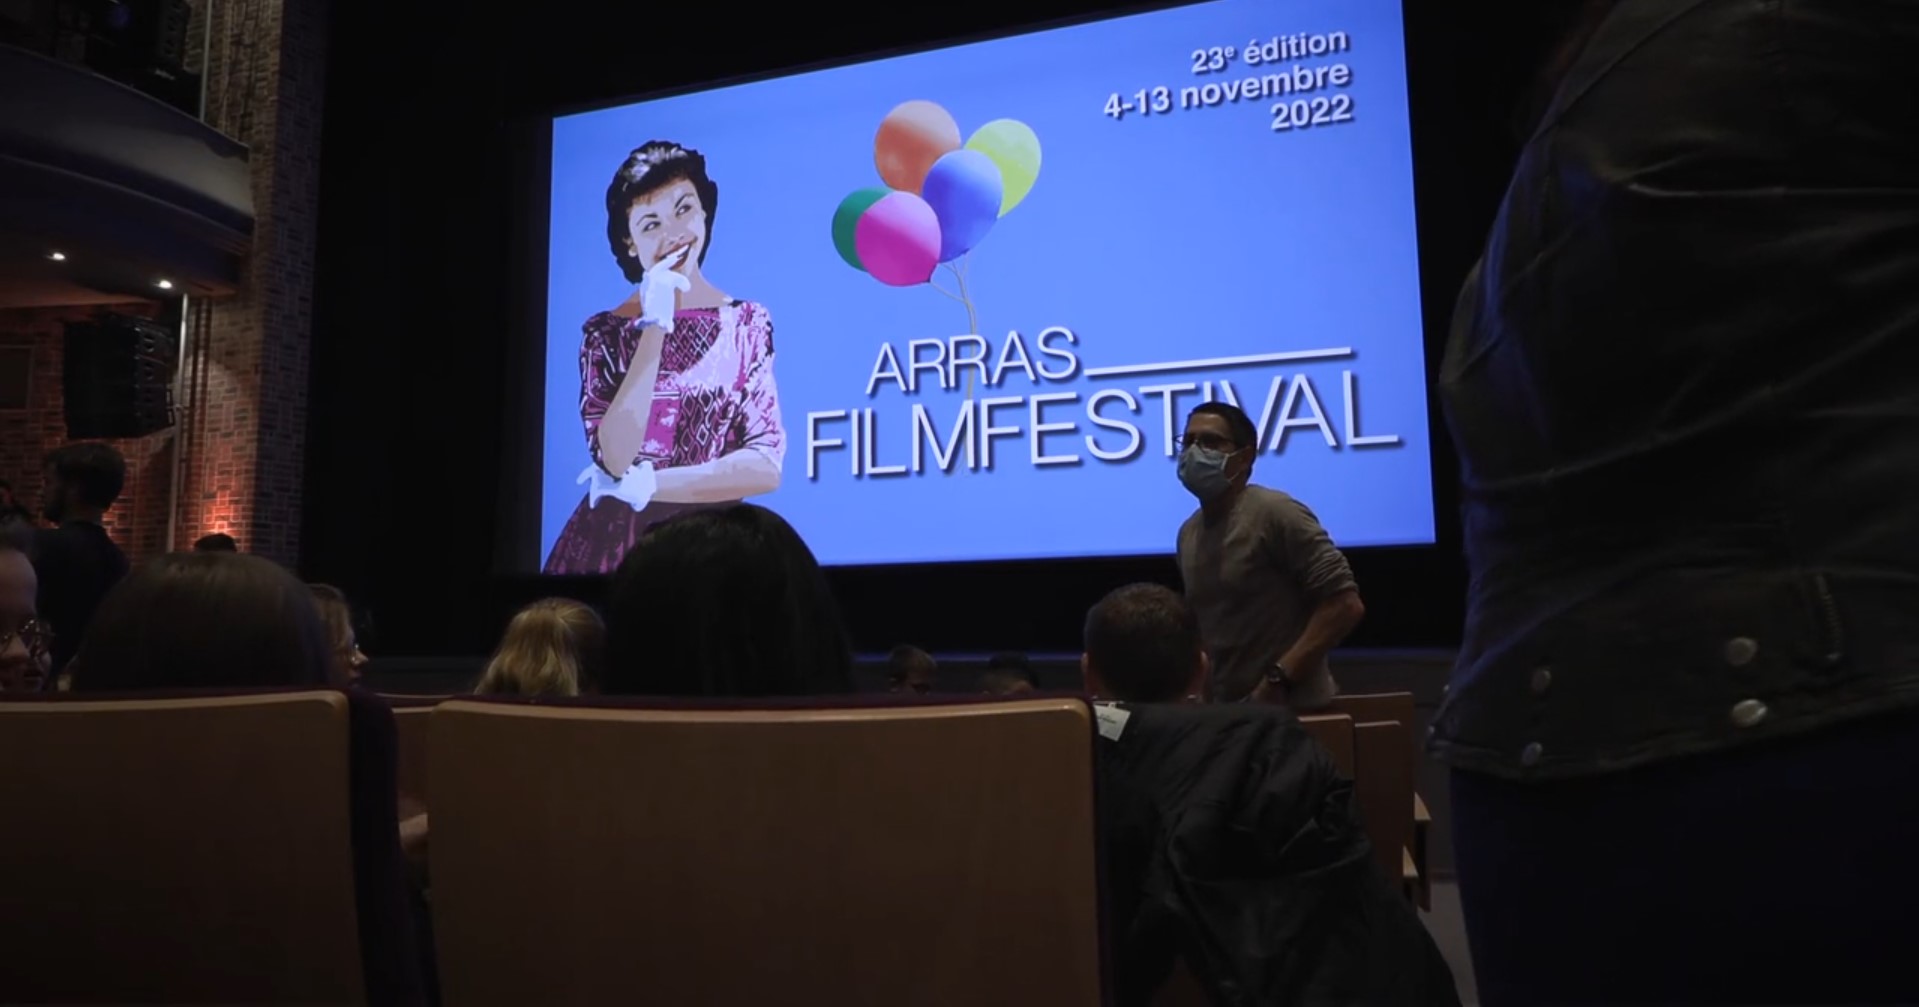 Extrait de l'épisode Arras Film Festival sur Mer de la websérie Collège au cinéma 62